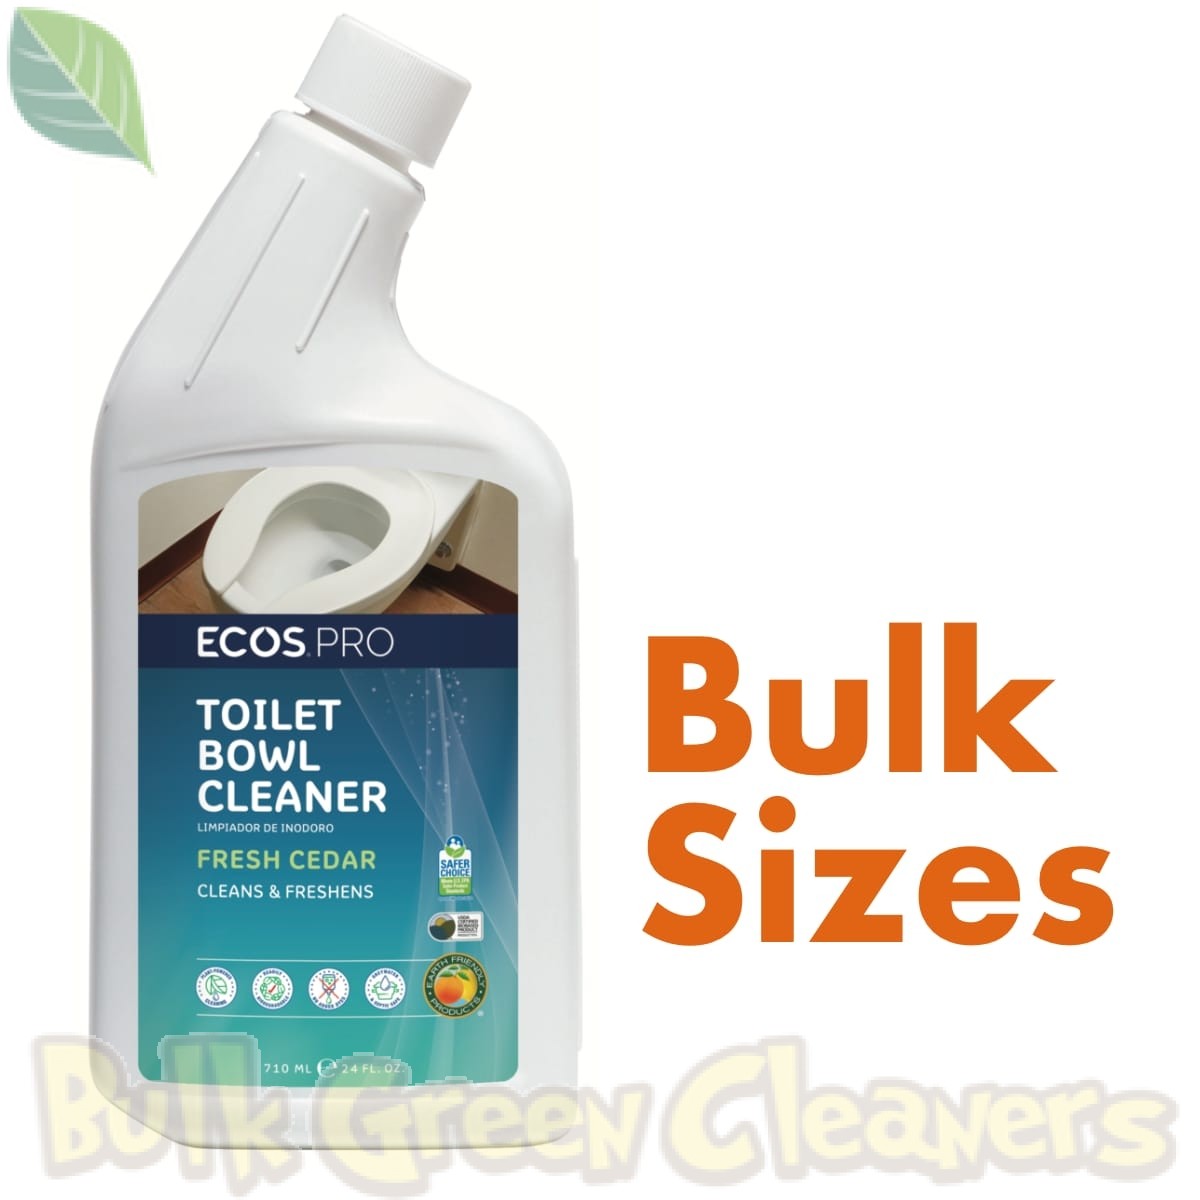 https://bulkgreencleaners.com/media/catalog/product/cache/1/image/1200x1200/7f3f3d13ad4faf8327b7df5de1f99c6f/e/c/ecos_pro_toilet_bowl_cleaner_bulk_sizes.jpg